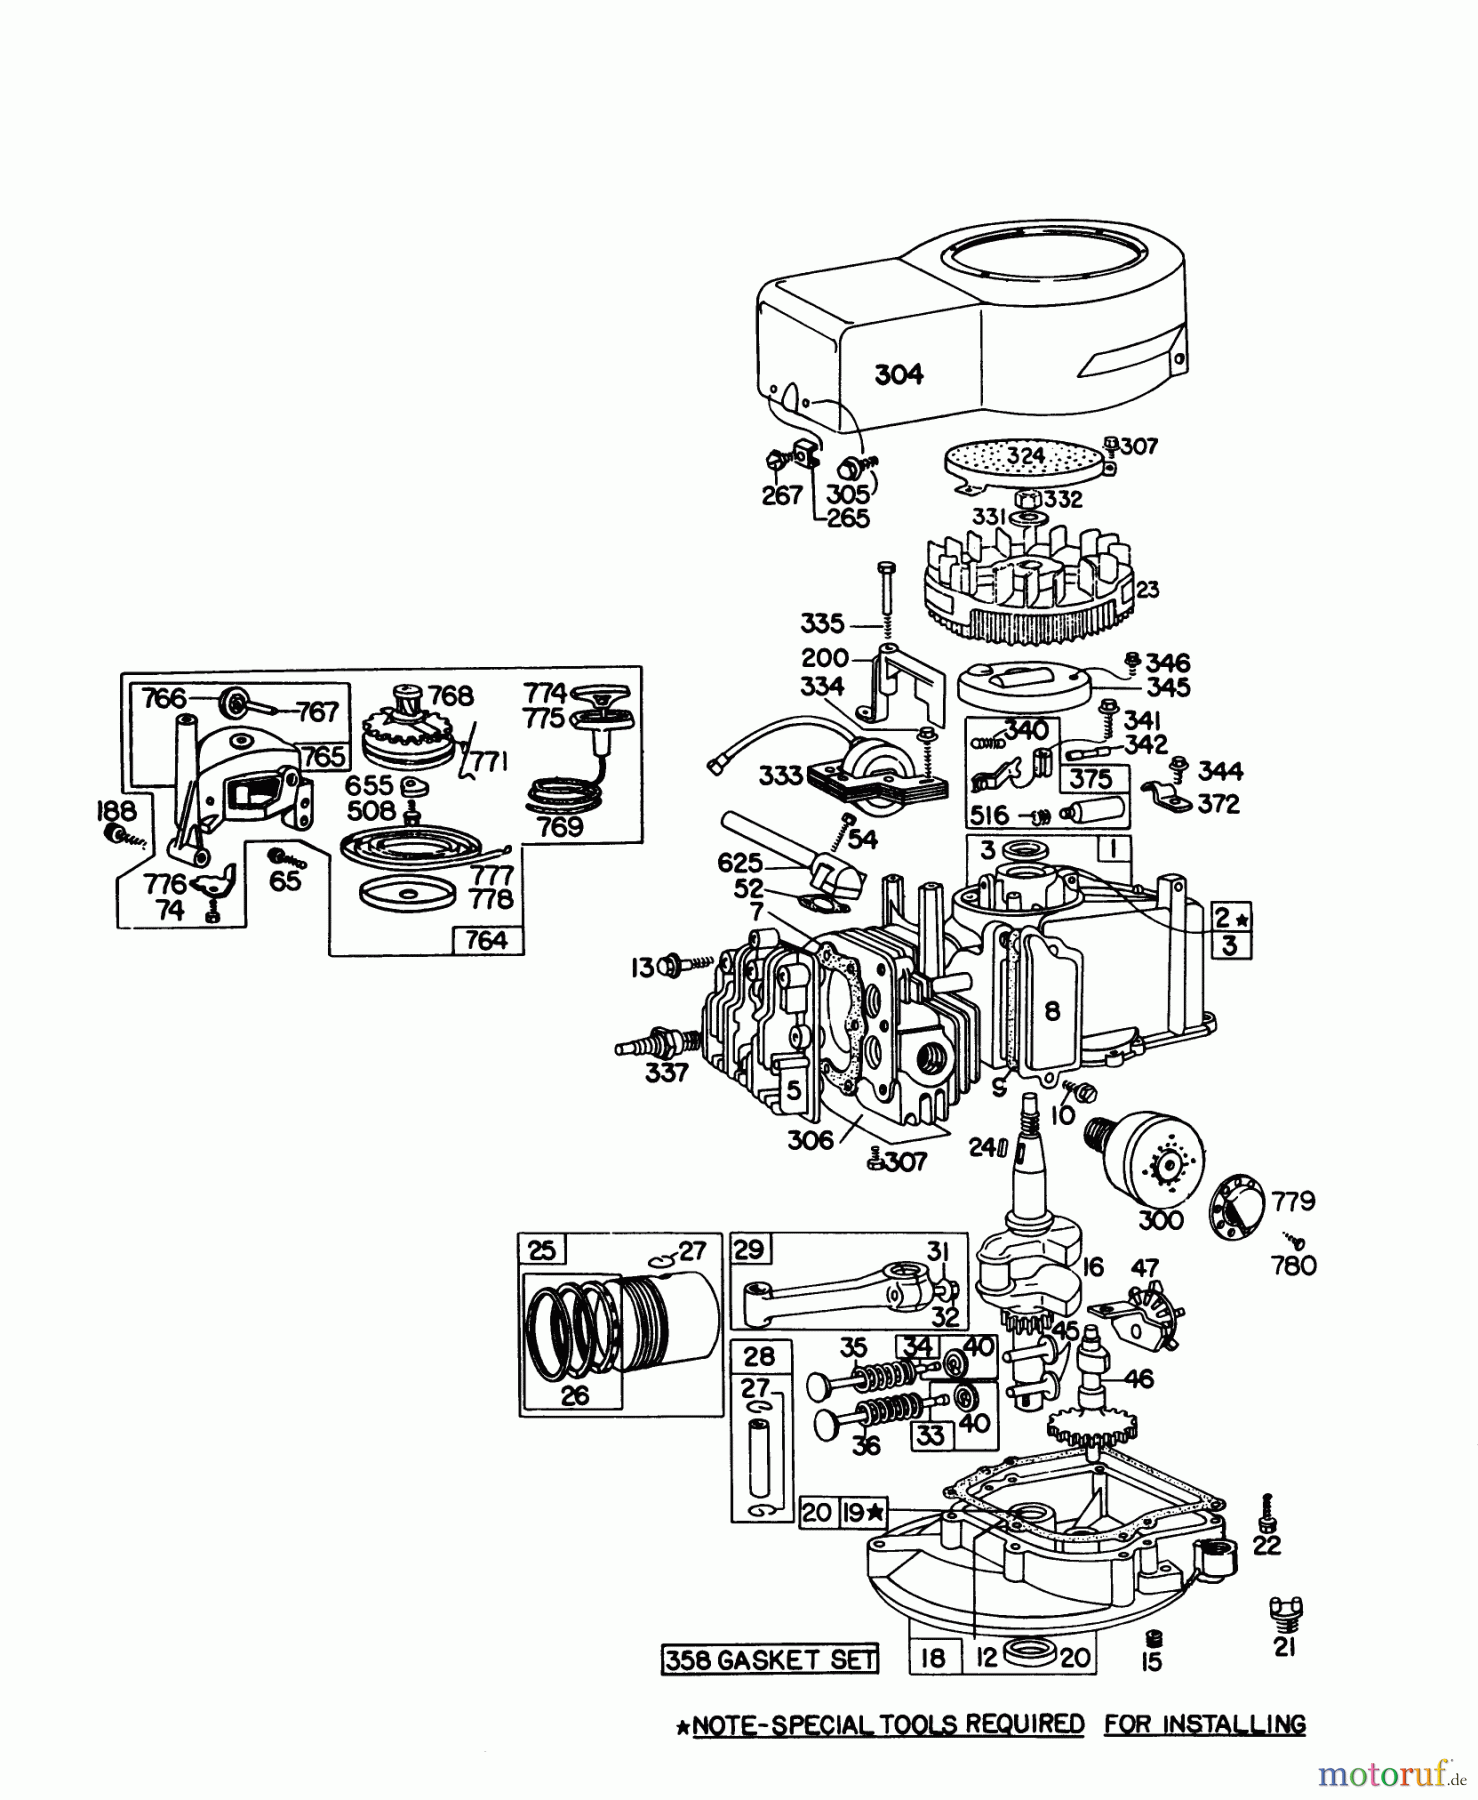  Toro Neu Mowers, Walk-Behind Seite 1 16067 - Toro Whirlwind II Lawnmower, 1978 (8000001-8999999) ENGINE BRIGGS & STRATTON MODEL 92908-1895-01 FOR 21